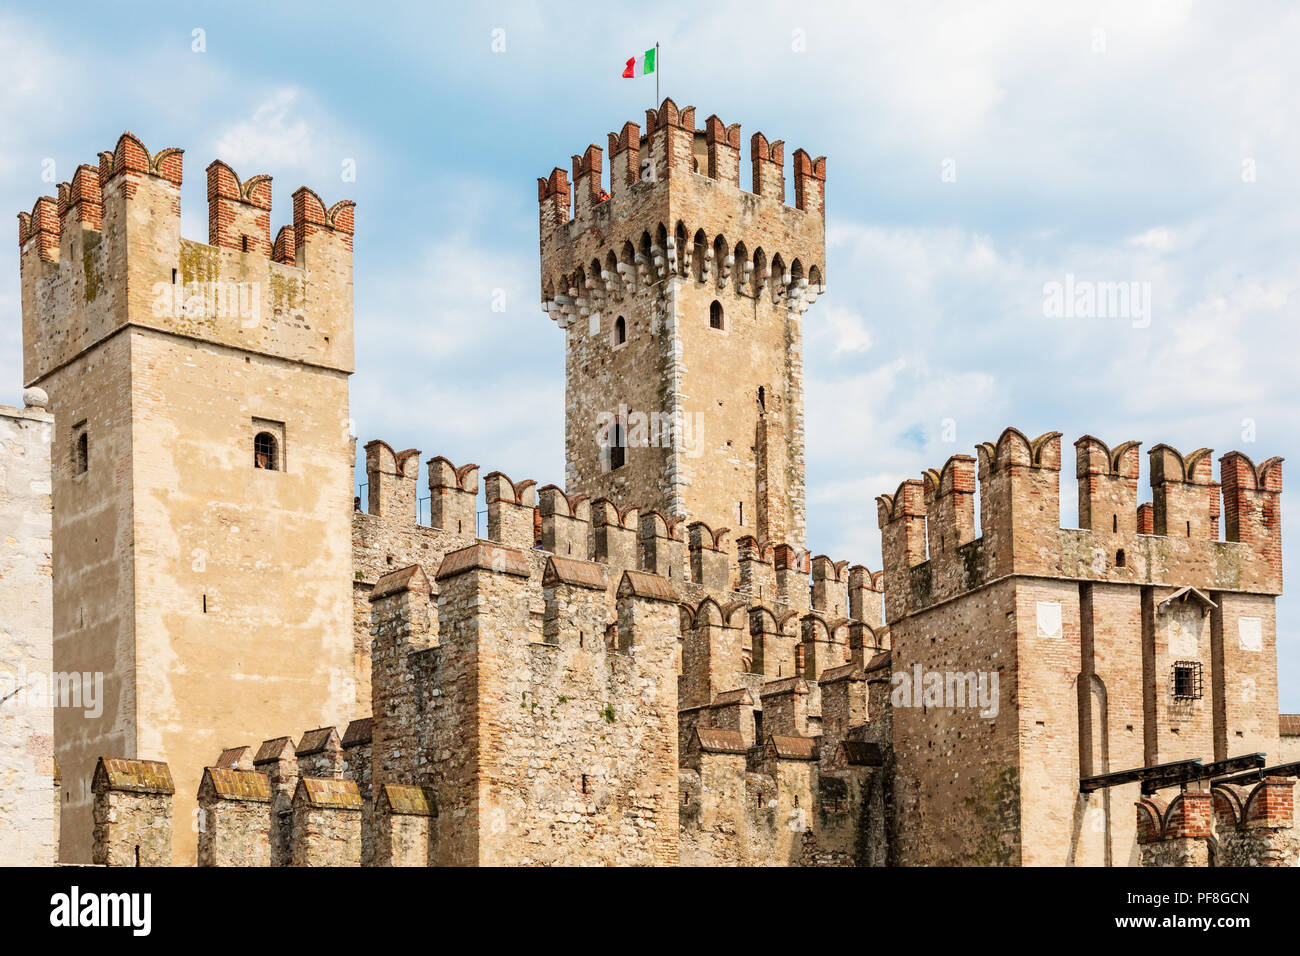 Les remparts du château médiéval à Sirmione sur le lac de garde dans la région Lombardie en Italie. Le château est contre un ciel bleu avec un drapeau italien Banque D'Images